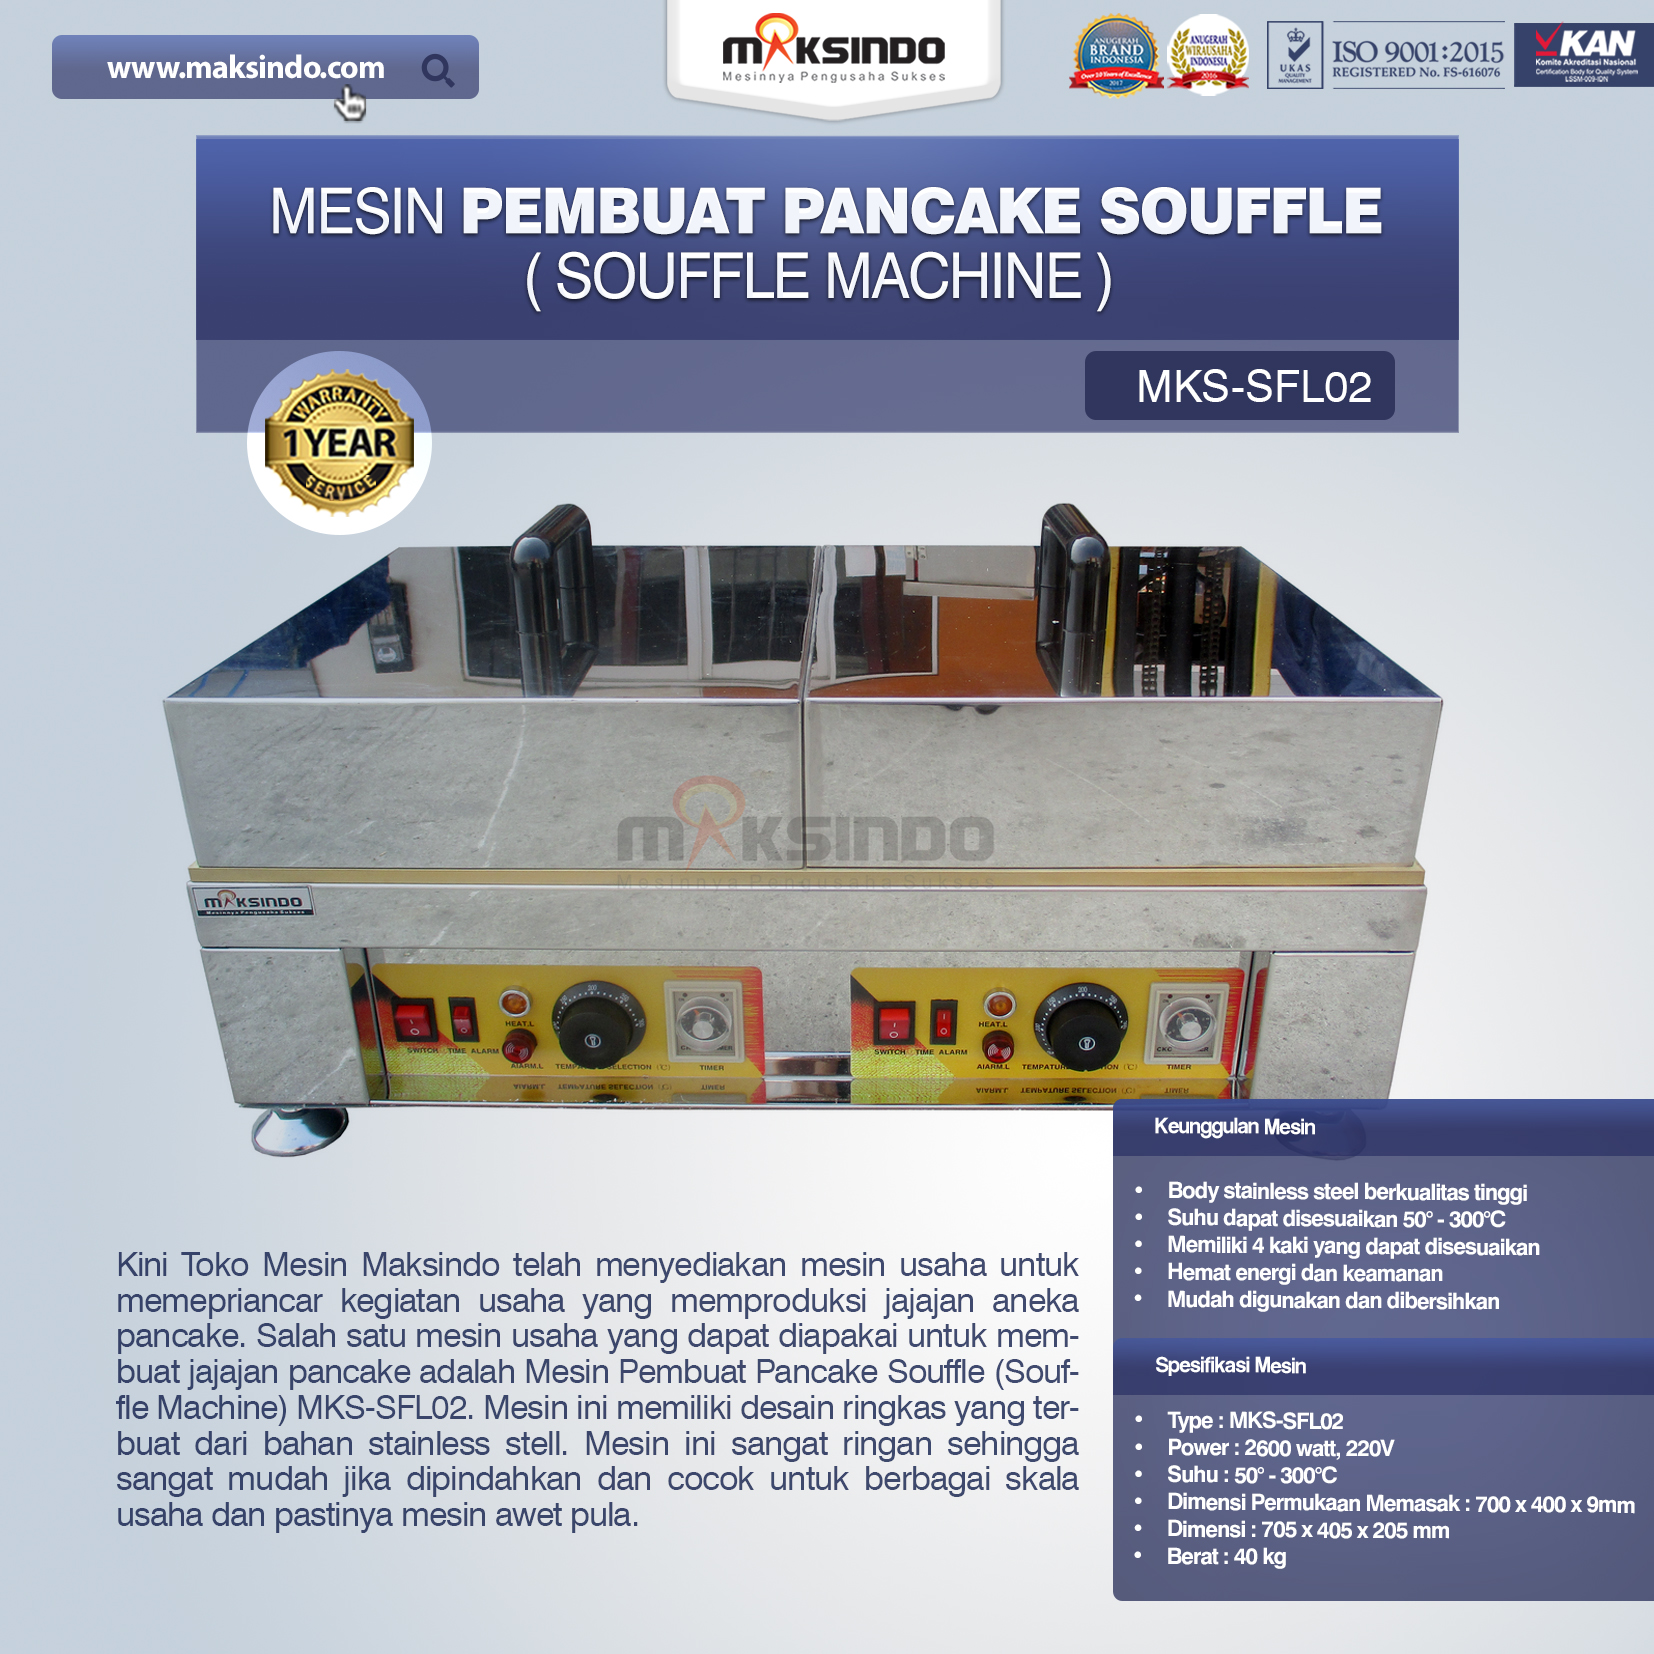 Jual Mesin Pembuat Pancake Souffle (Souffle Machine) MKS-SFL02 di Blitar